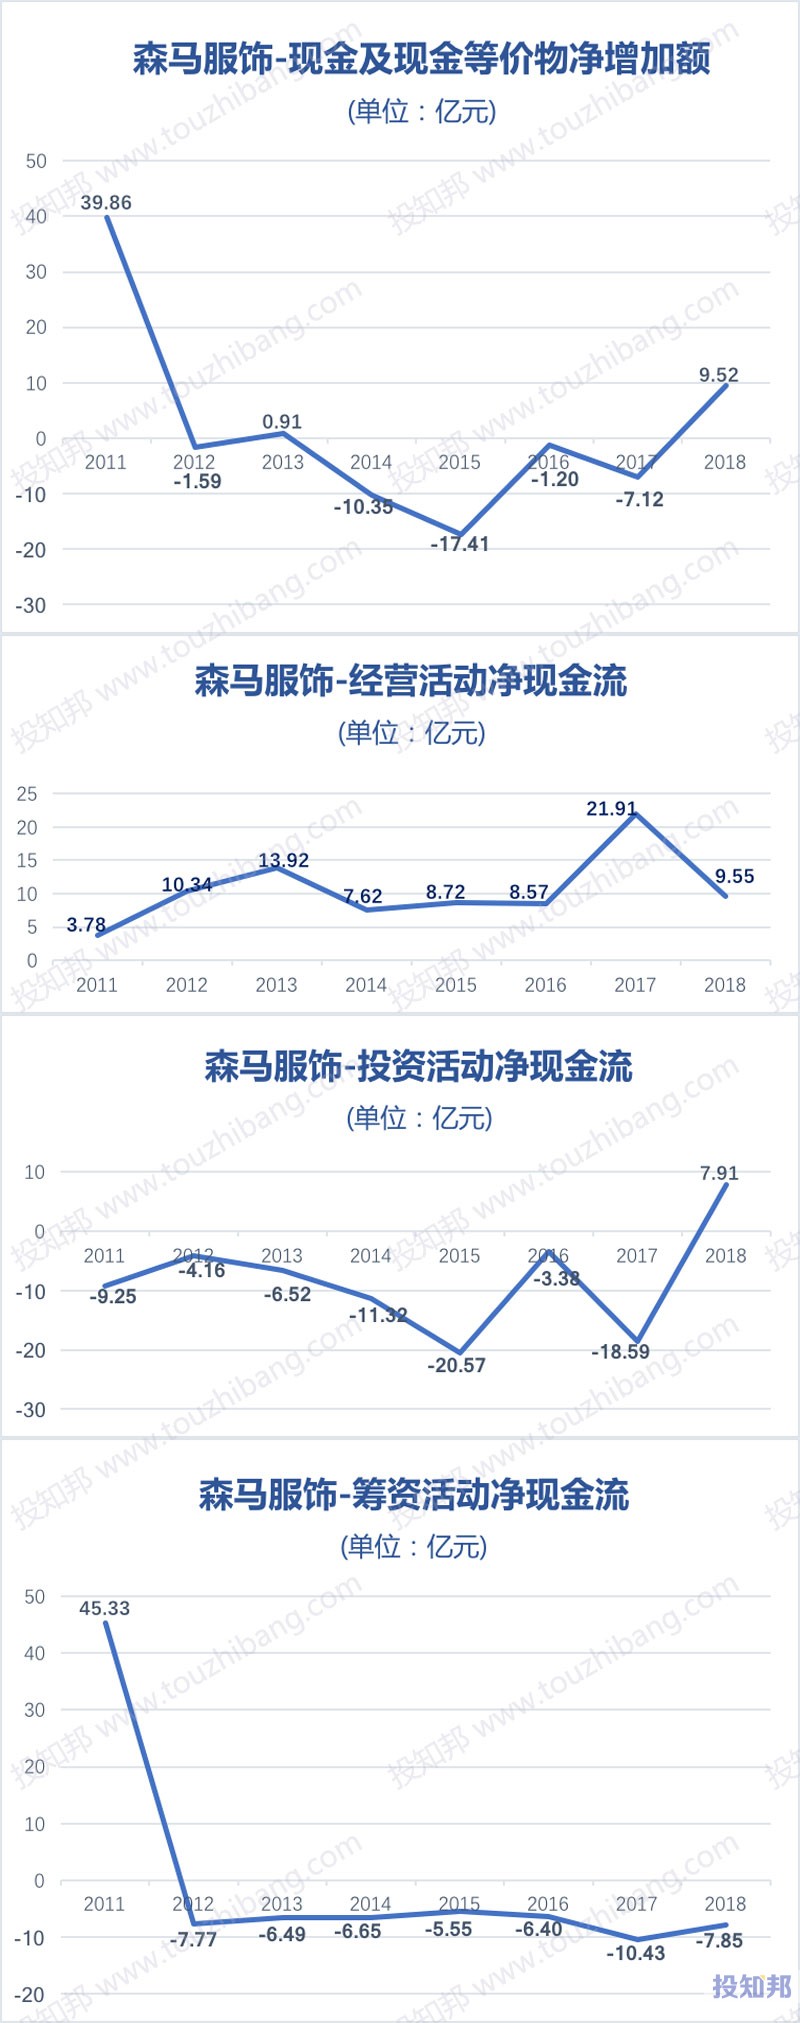 图解森马服饰(002563)财报数据(2011年～2019年Q3)